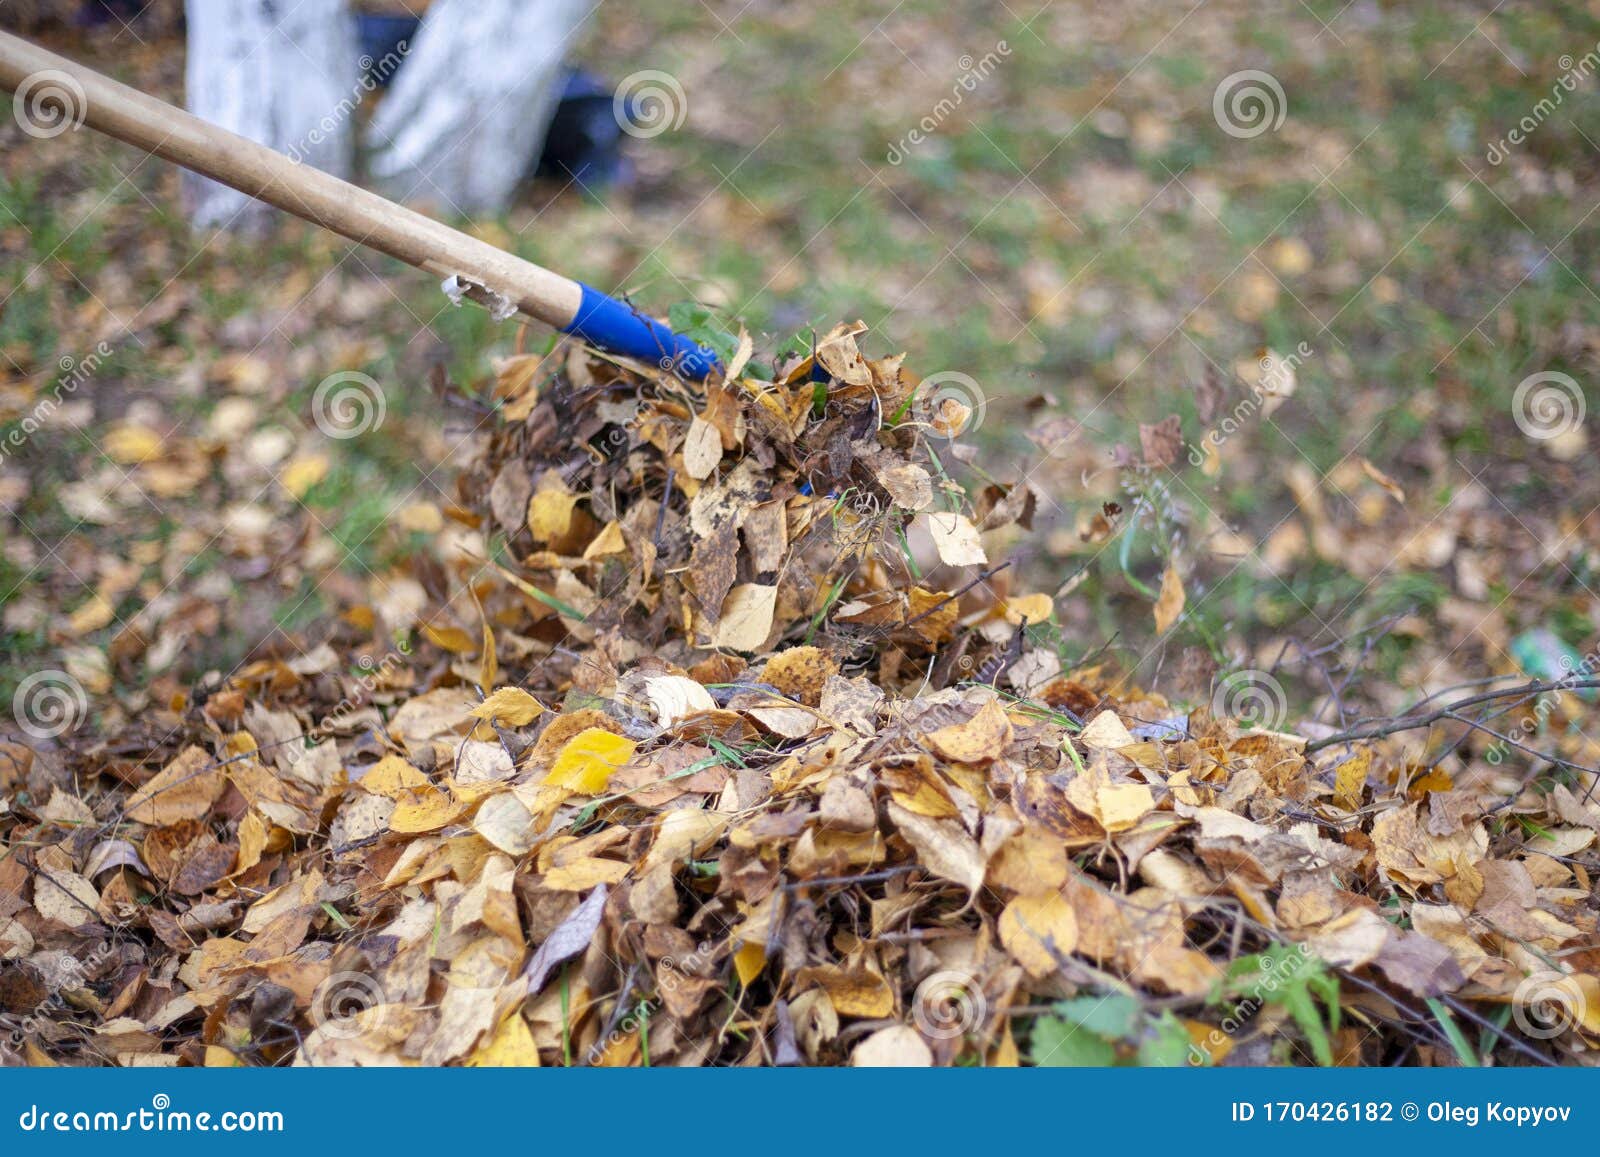 Harvesting Dry Leaves. Restoring Order on the Street Stock Photo ...